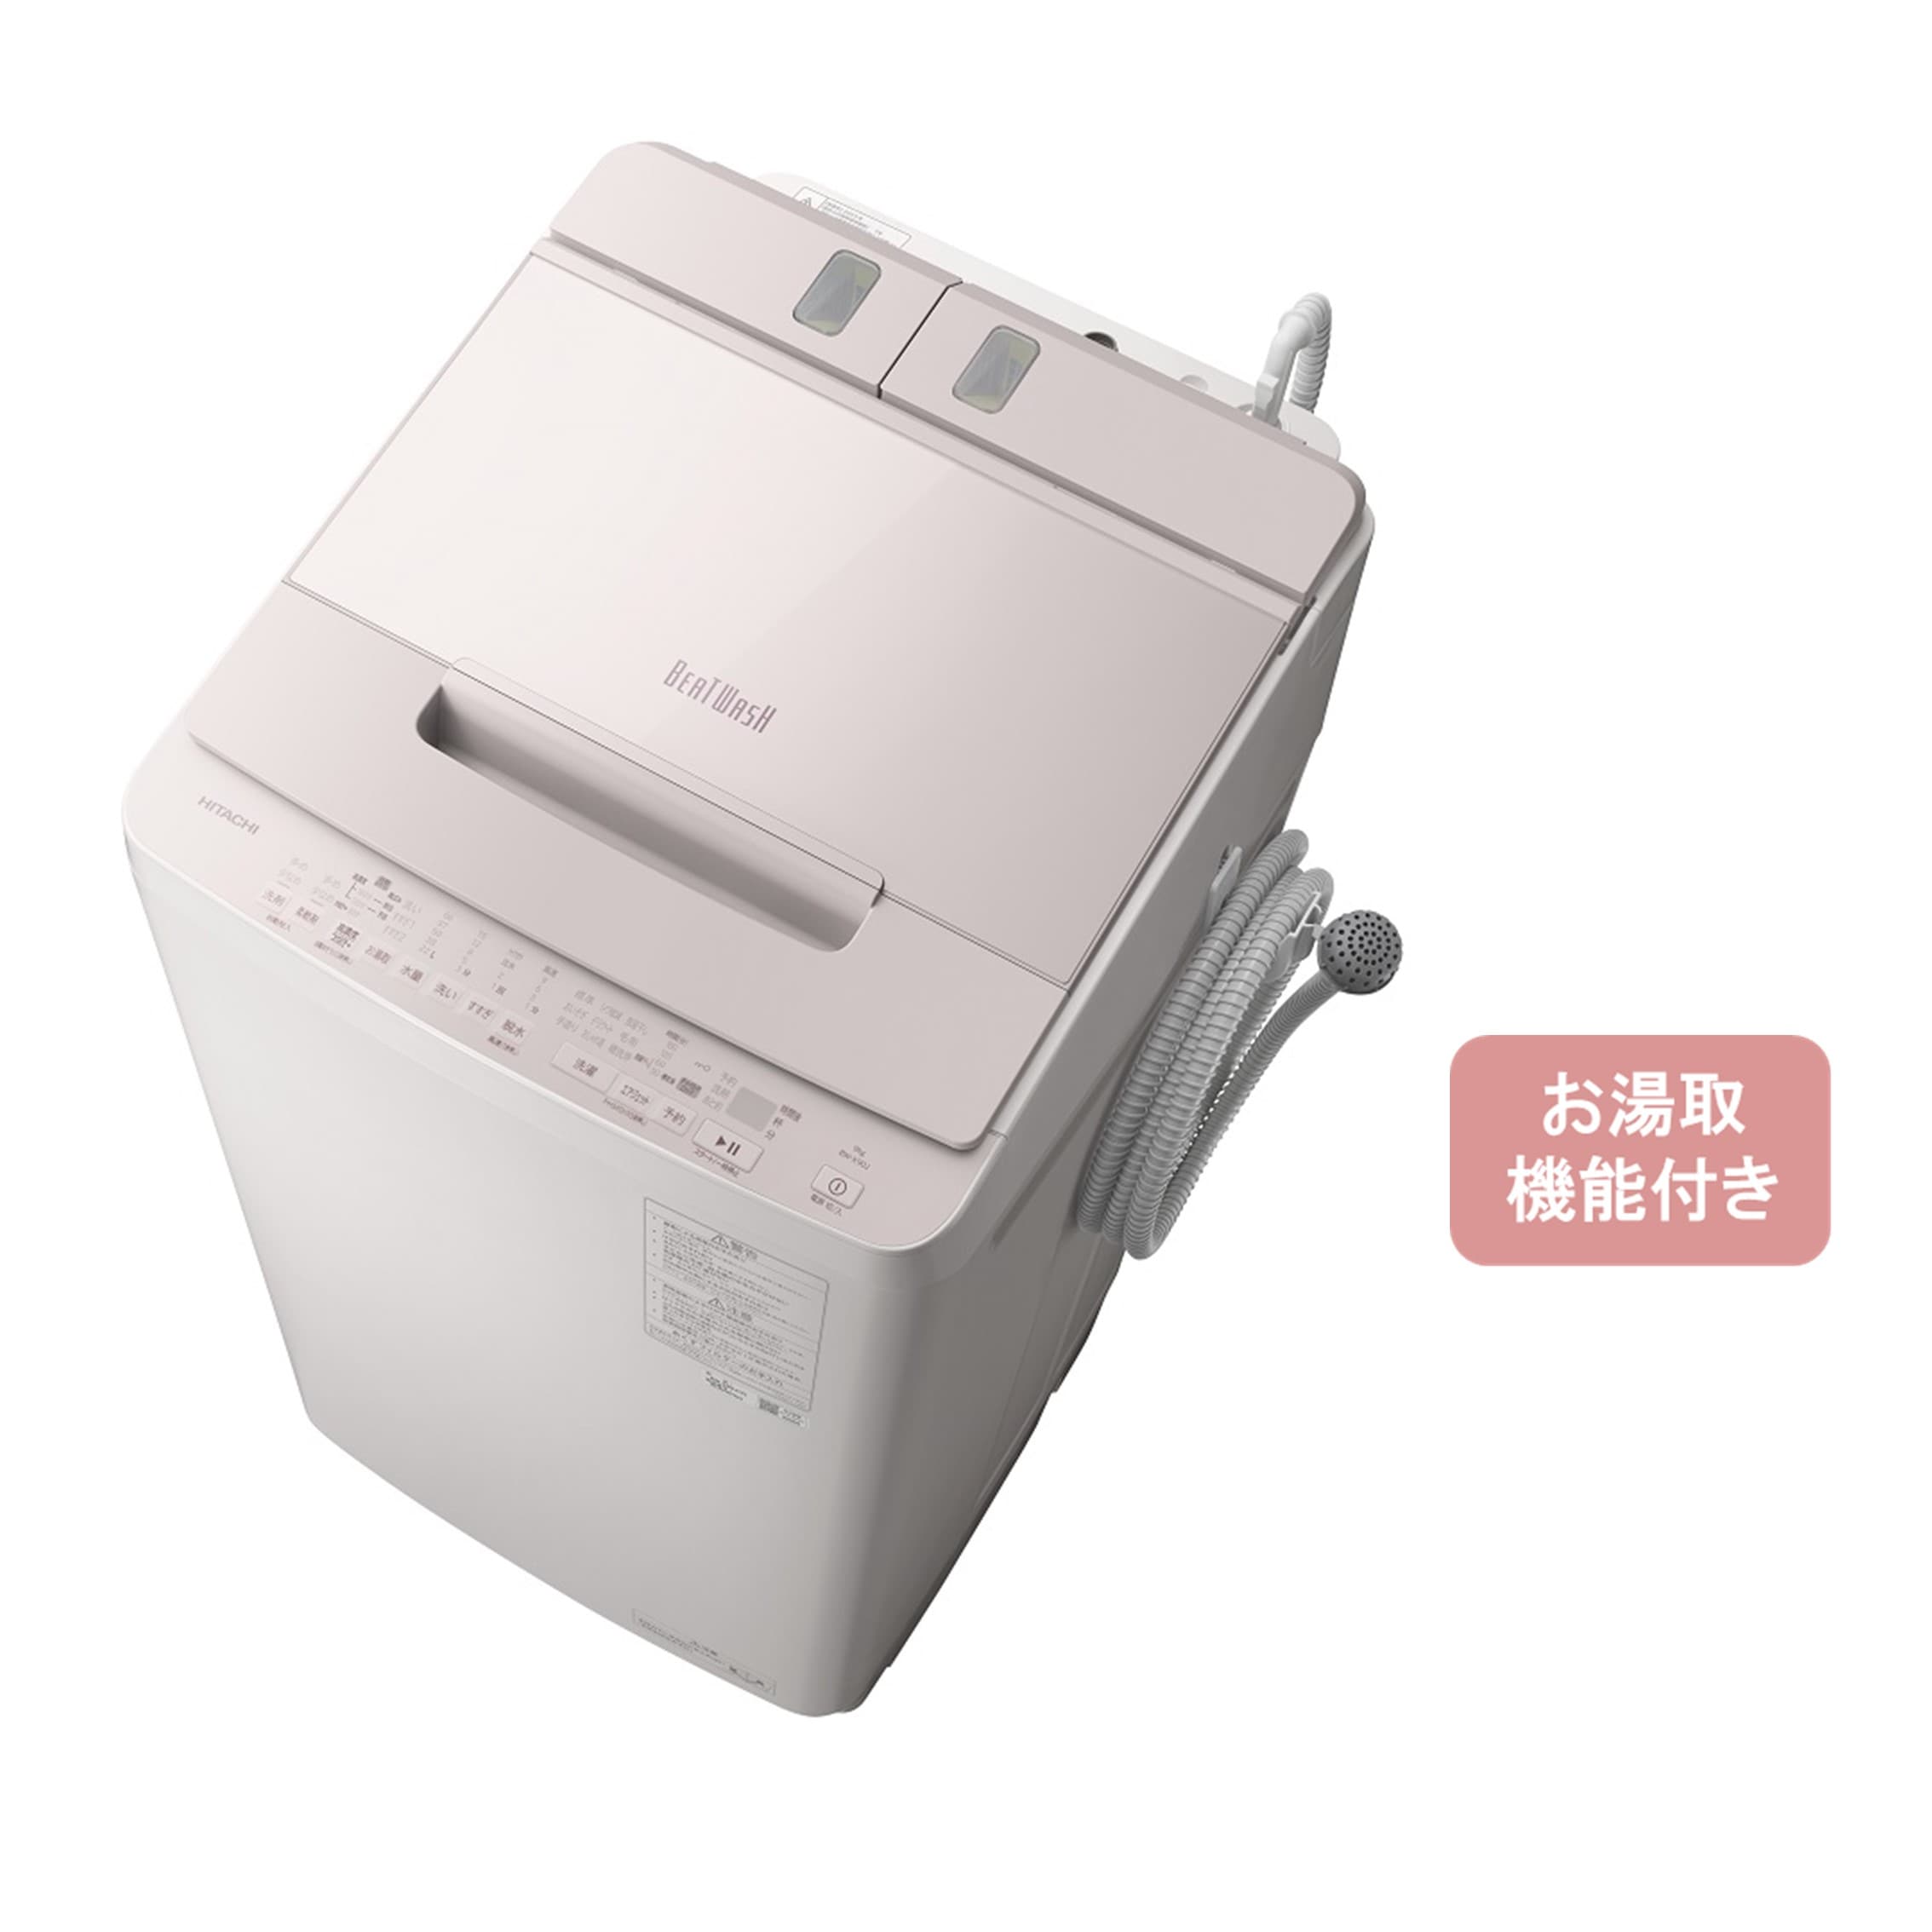 608☆ 洗濯機 日立 BEAT WASH 9kg 乾燥5kg 設置配送無料 - 洗濯機